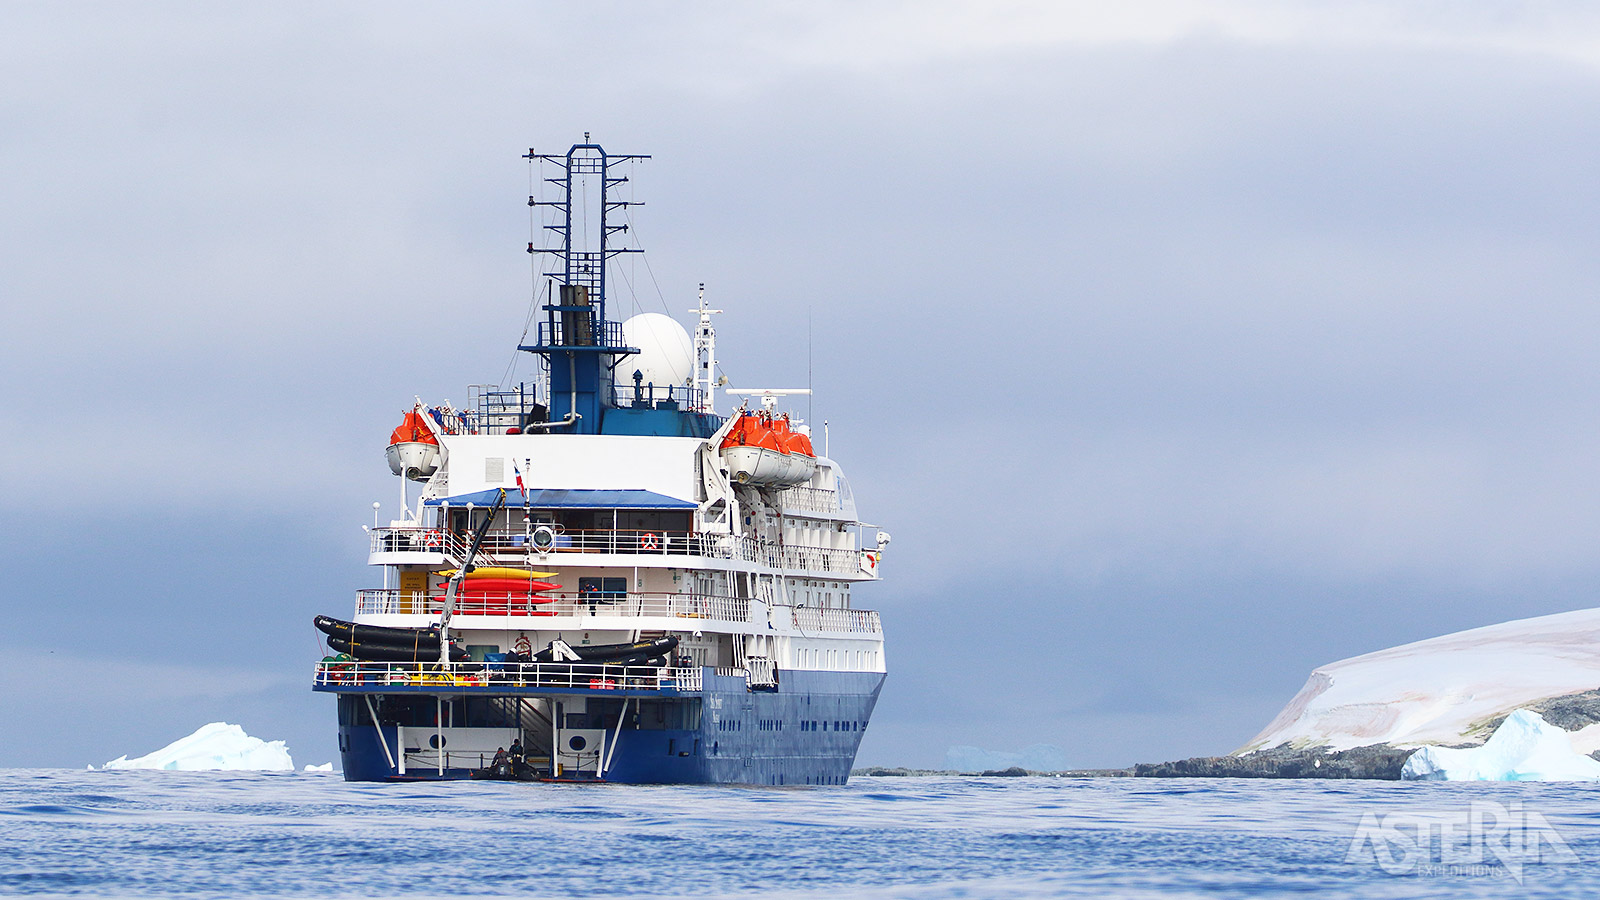 De MV Sea Spirit beschikt over 12 zodiacs die worden ingezet voor verkenning van de omgeving en landingen op verlaten kusten